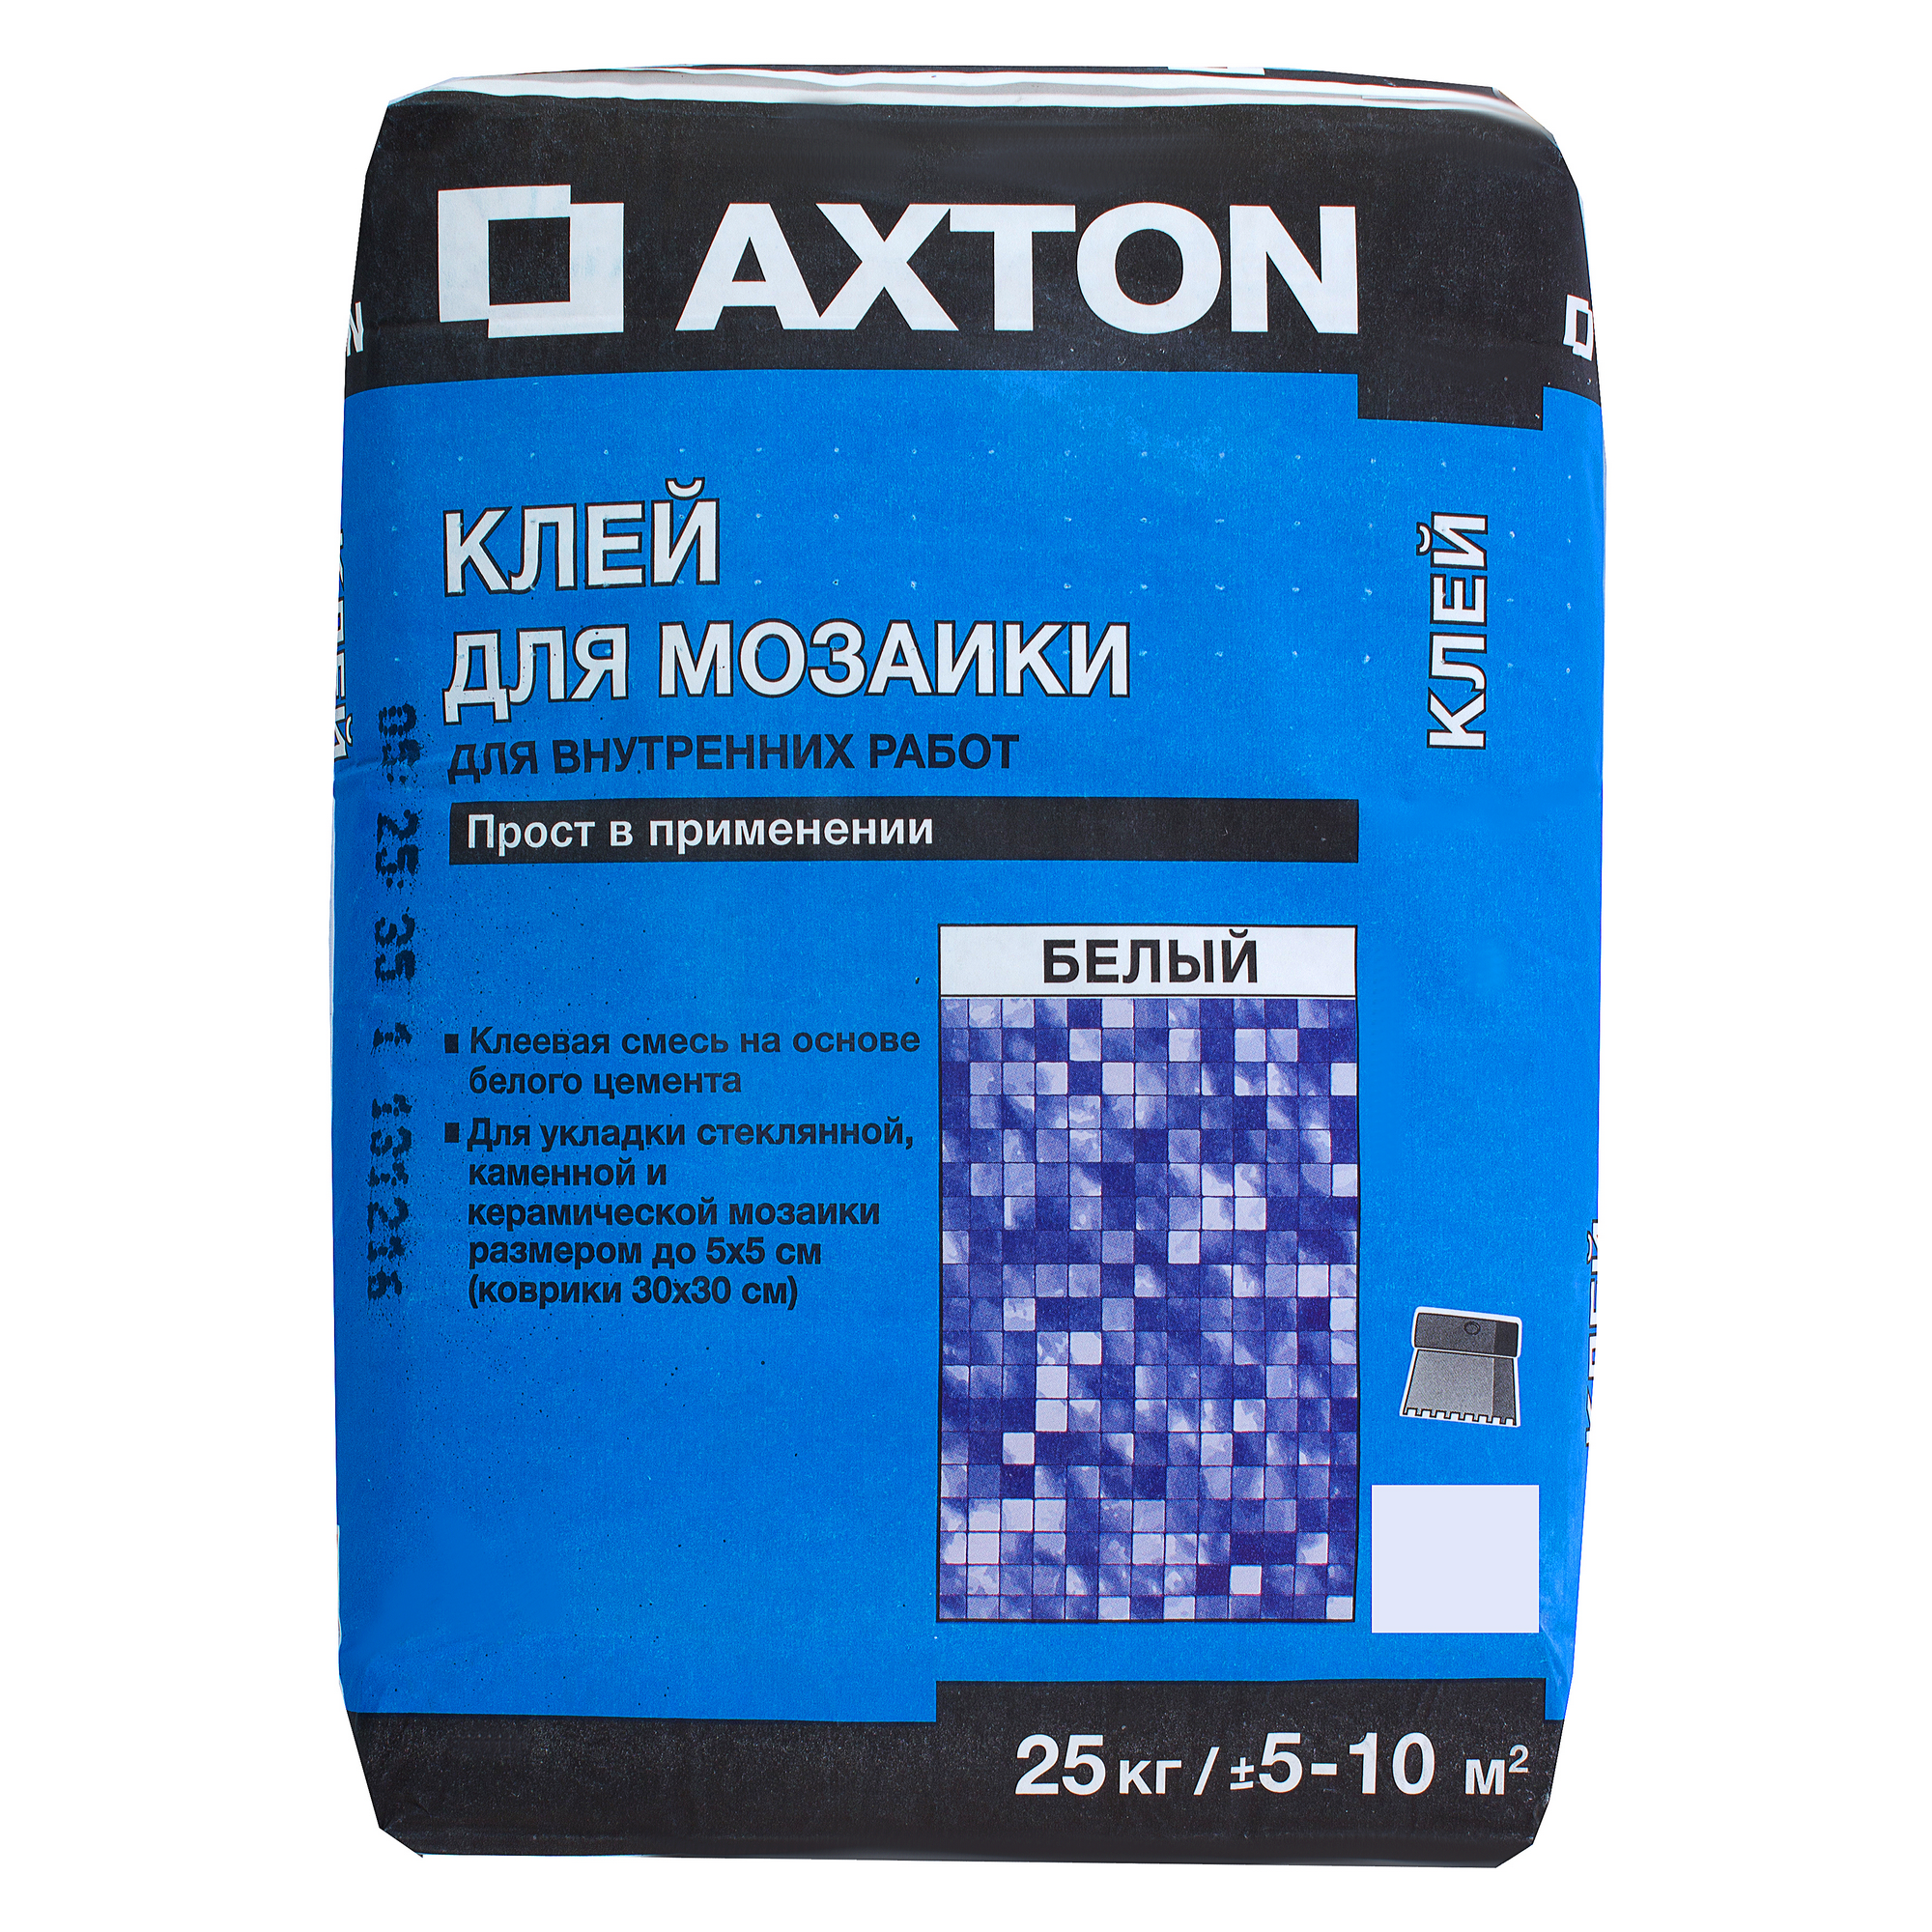 Плиточный клей для мозаики. Плиточный клей Экстон. Клей плиточный Axton. Axton клей для плитки. Плиточный клей Axton 25 kg.